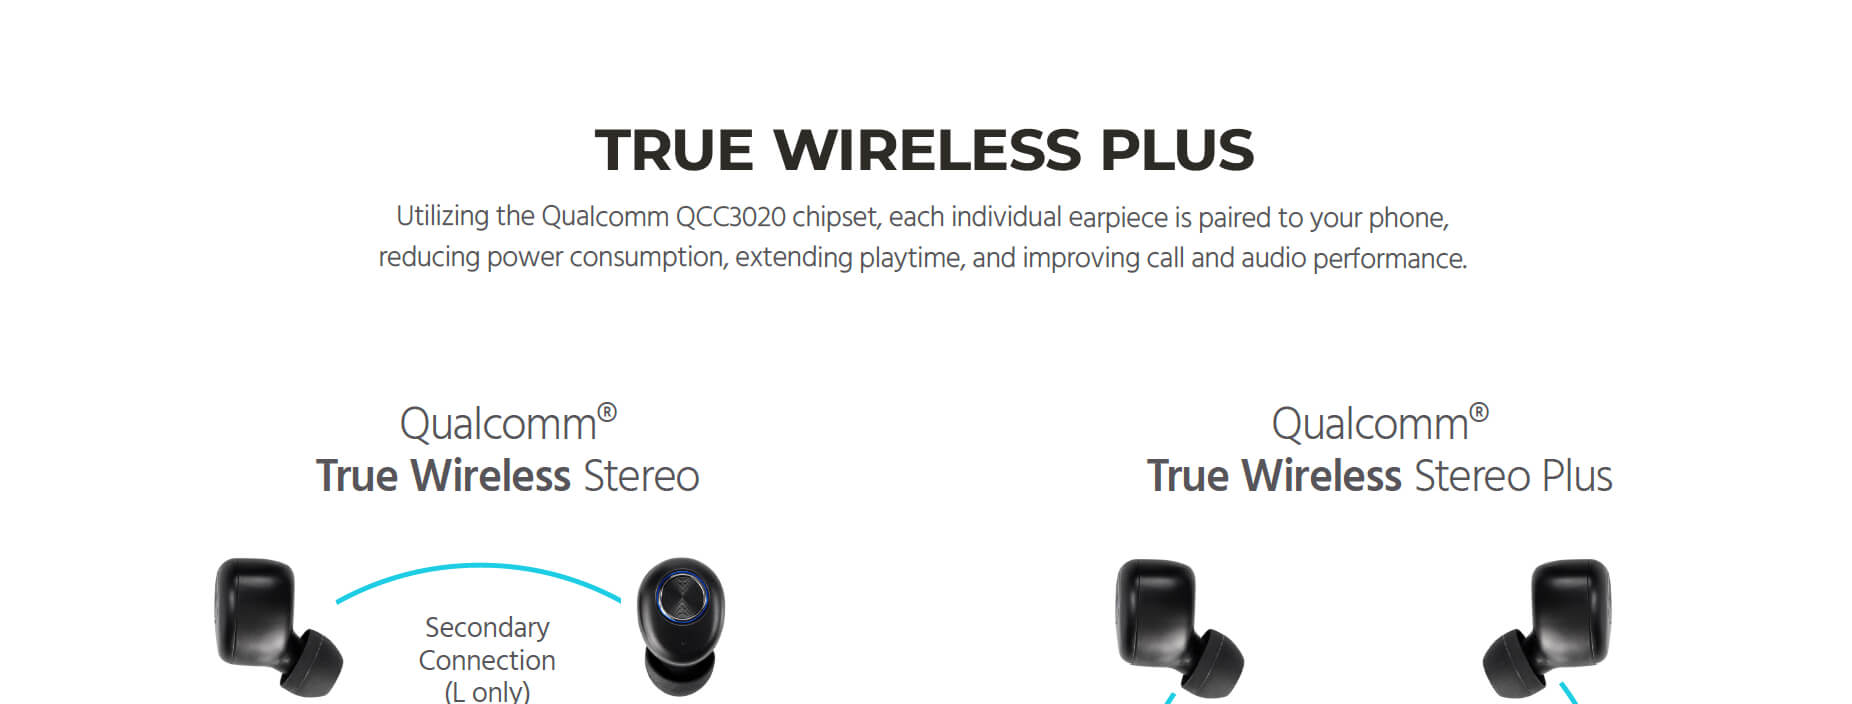 True Wireless Plus Earphones